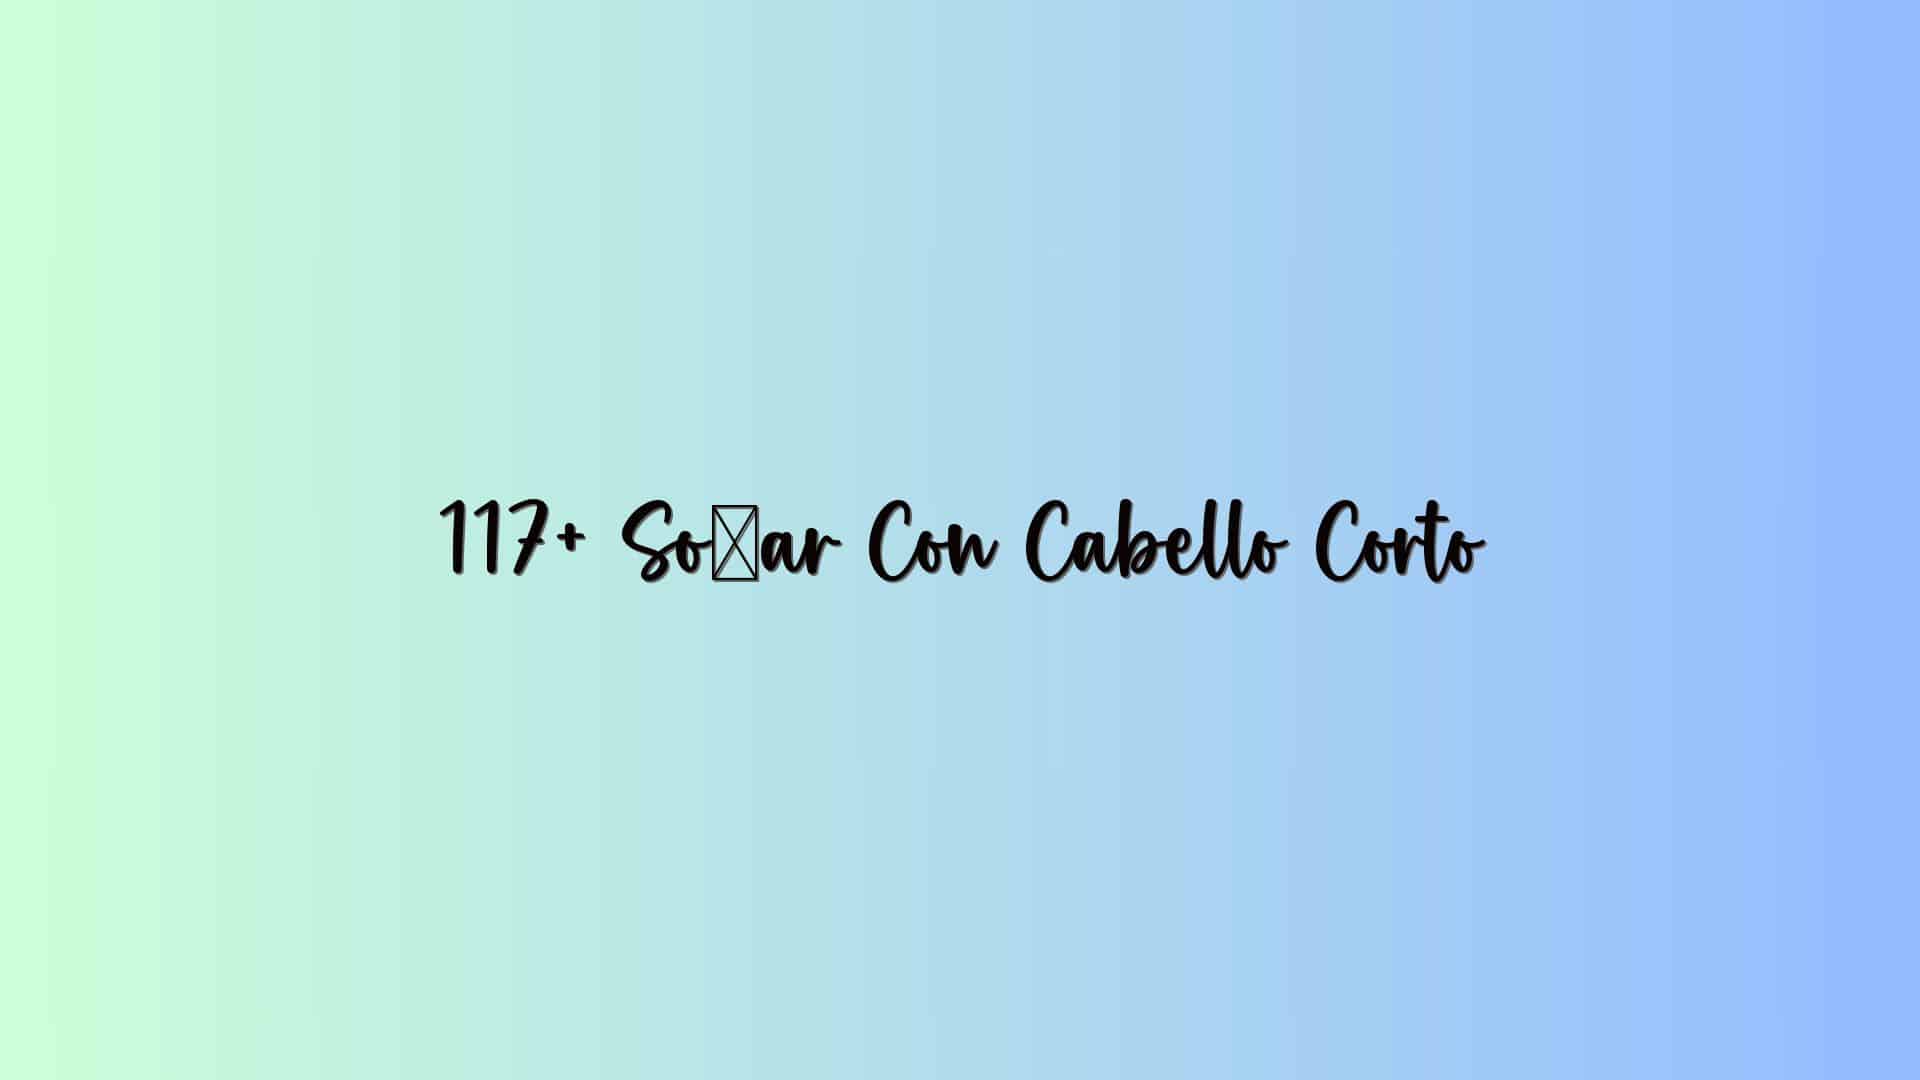 117+ Soñar Con Cabello Corto